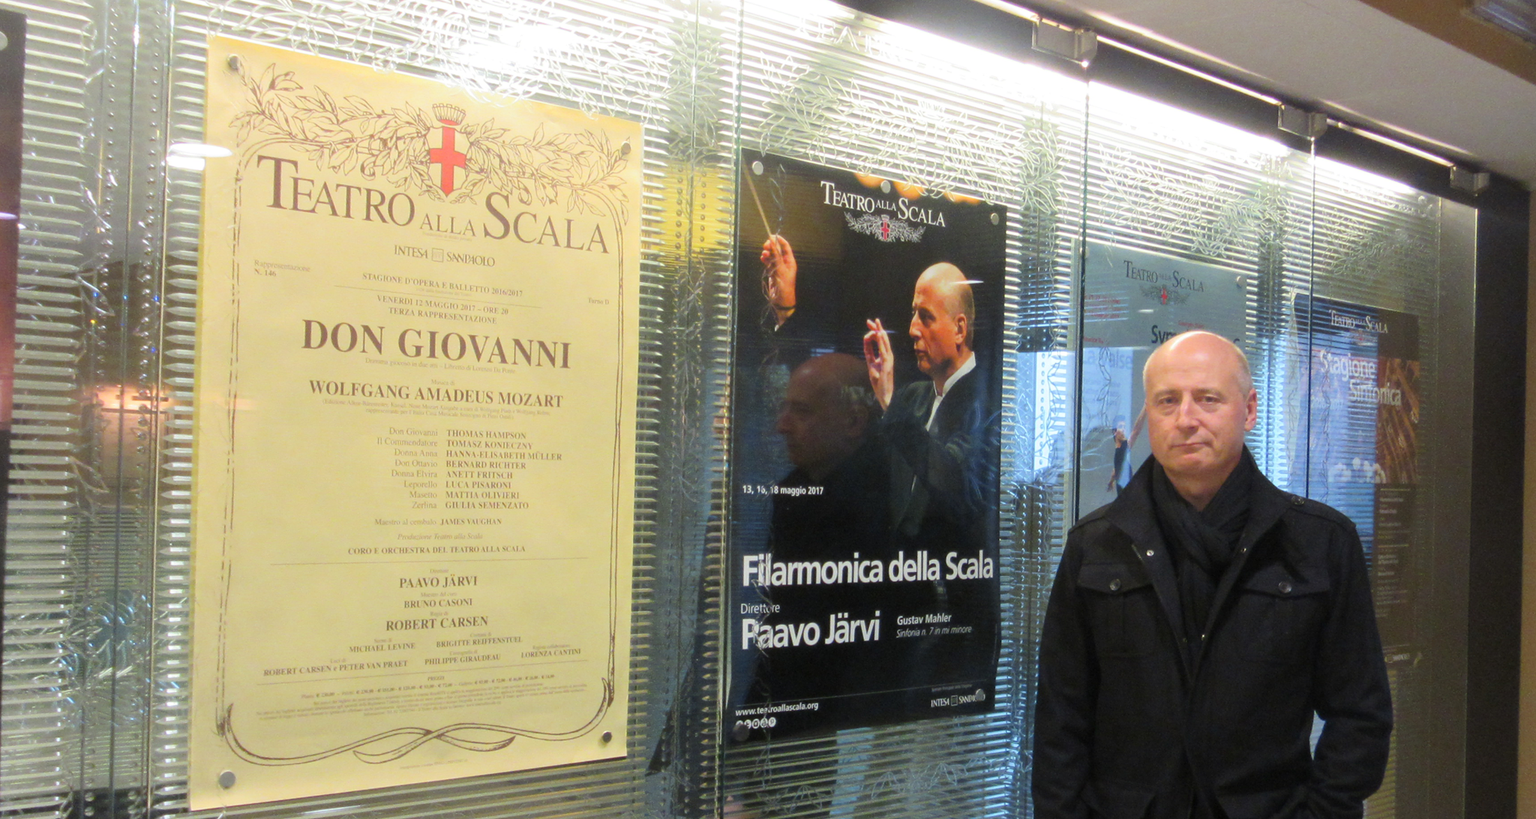 Paavo Järvi La Scala afiššide ees.